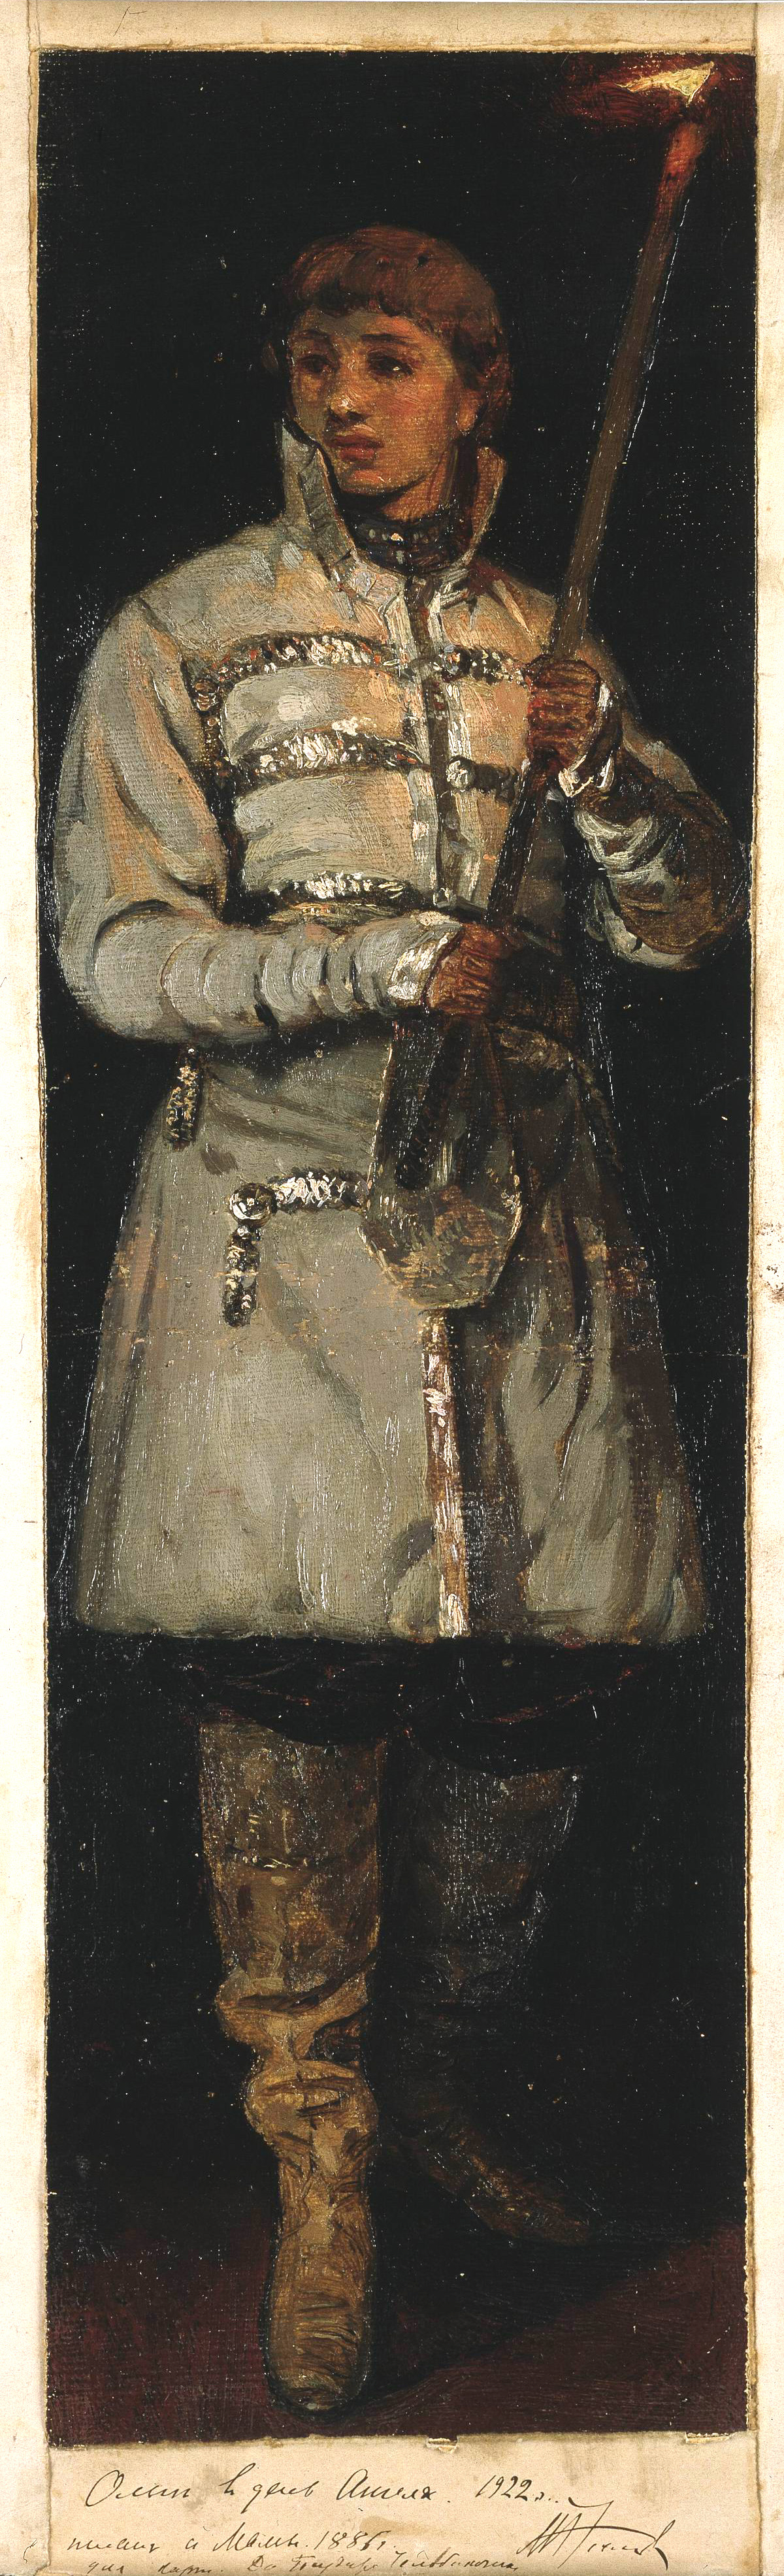 Нестеров М.. Юноша со свечой. 1885